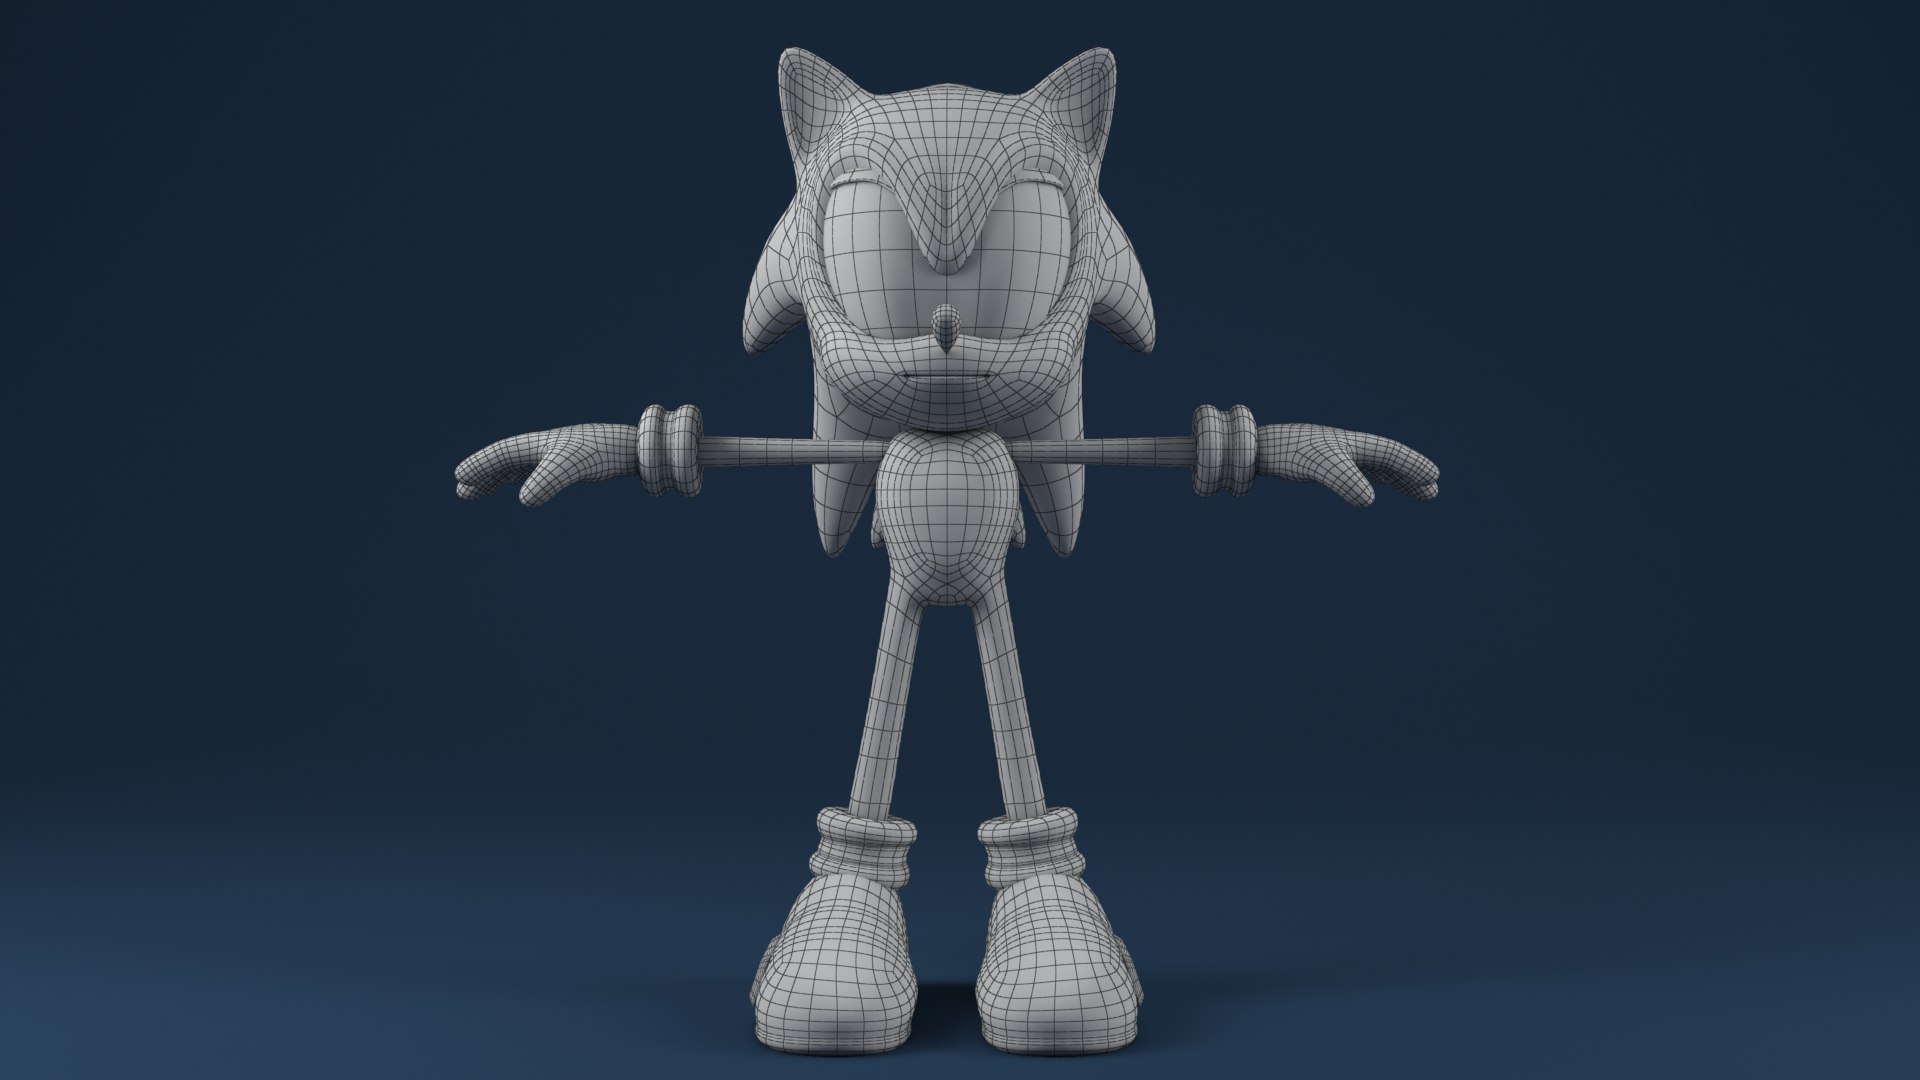 Sonic hedgehog character 3D model - TurboSquid 1446632